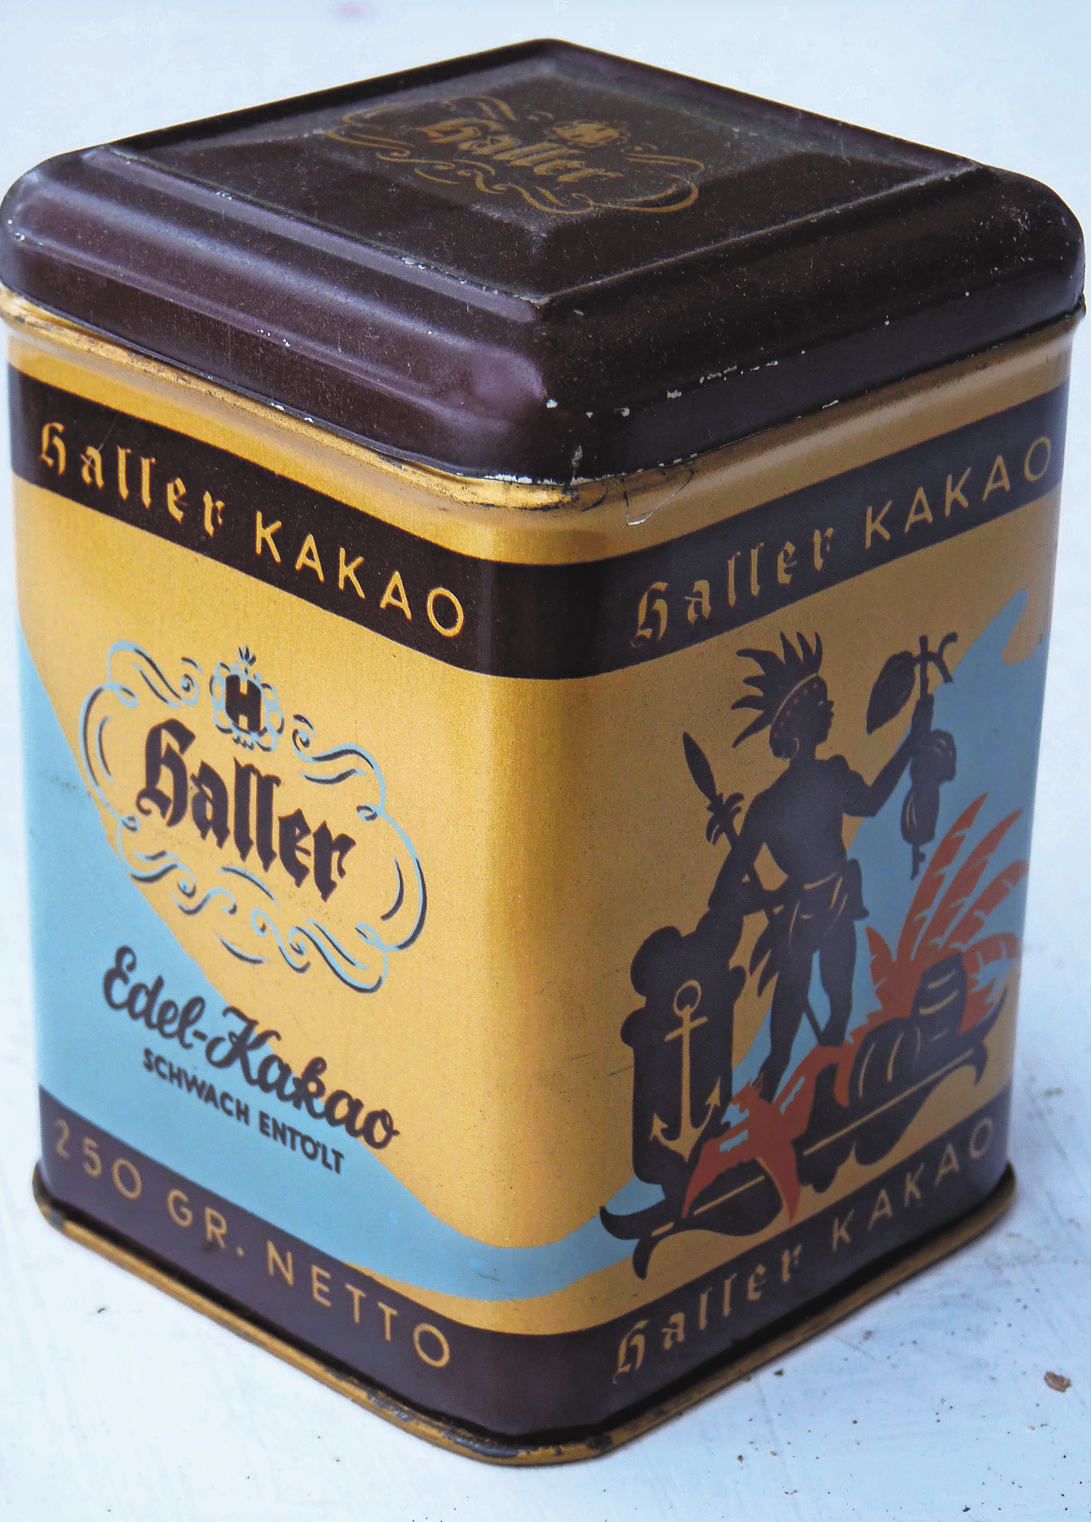 Kakao-Dose von Haller.